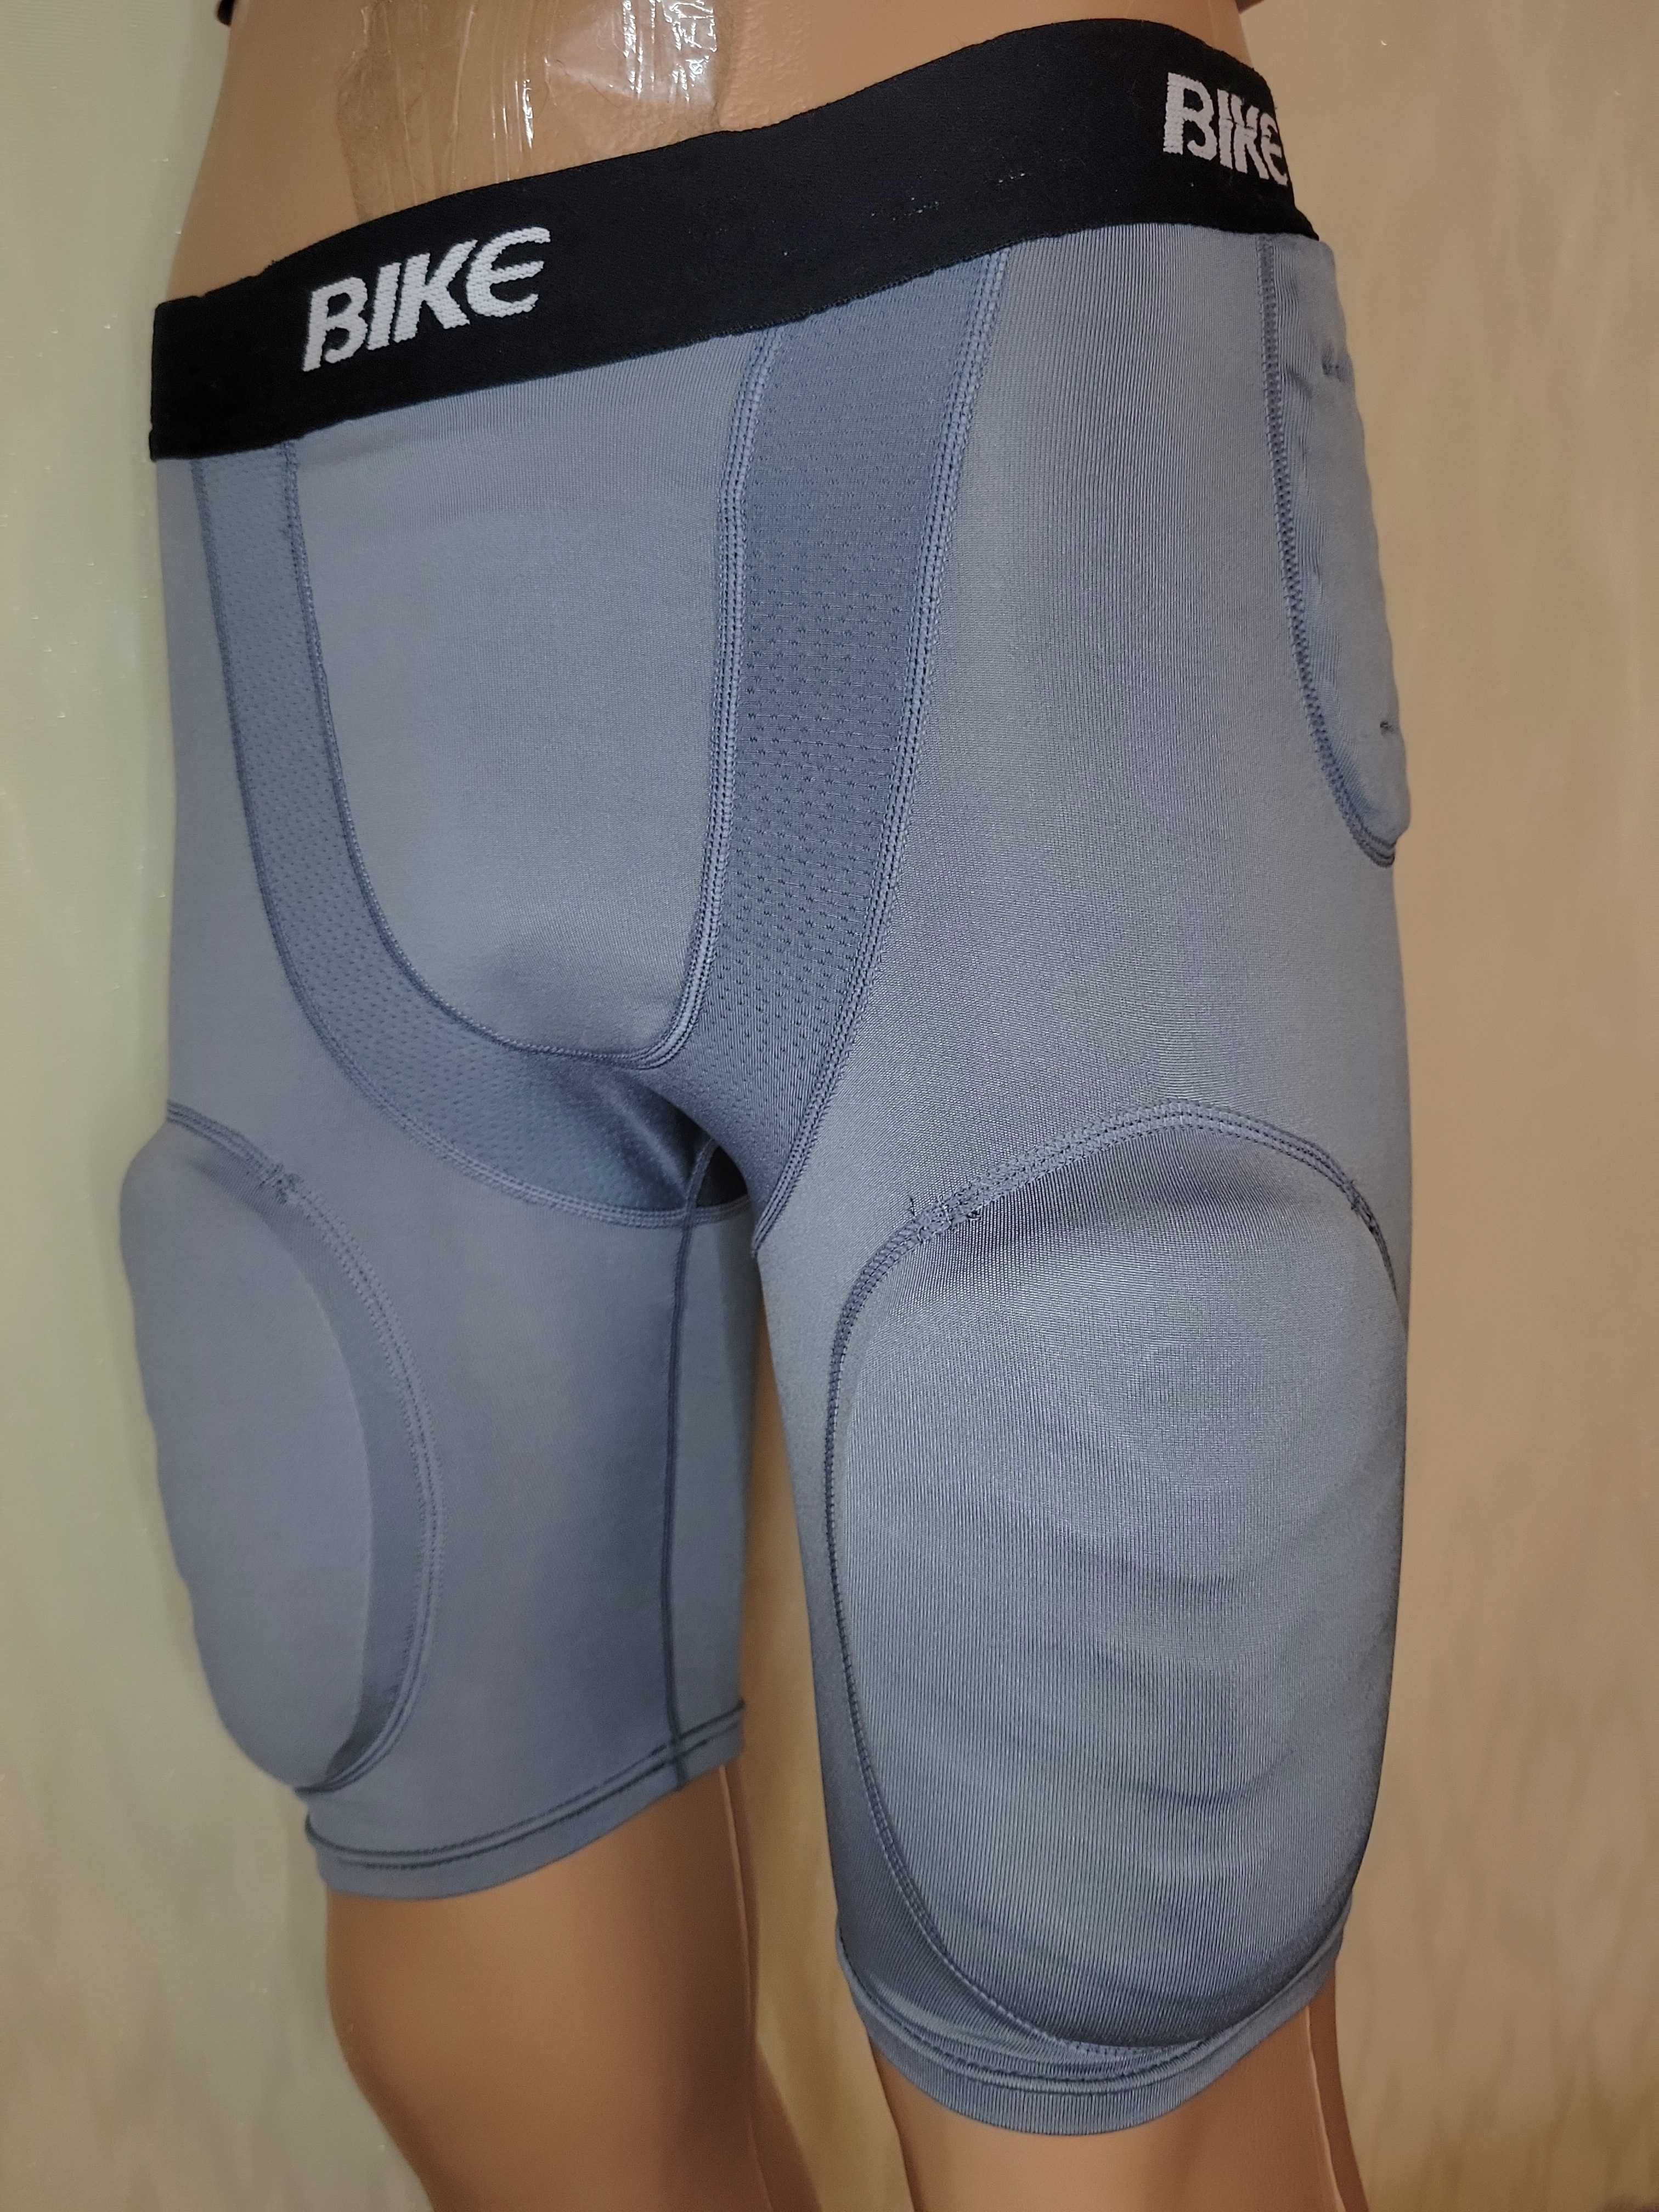 Компрессионные защитные шорты Bike, новые